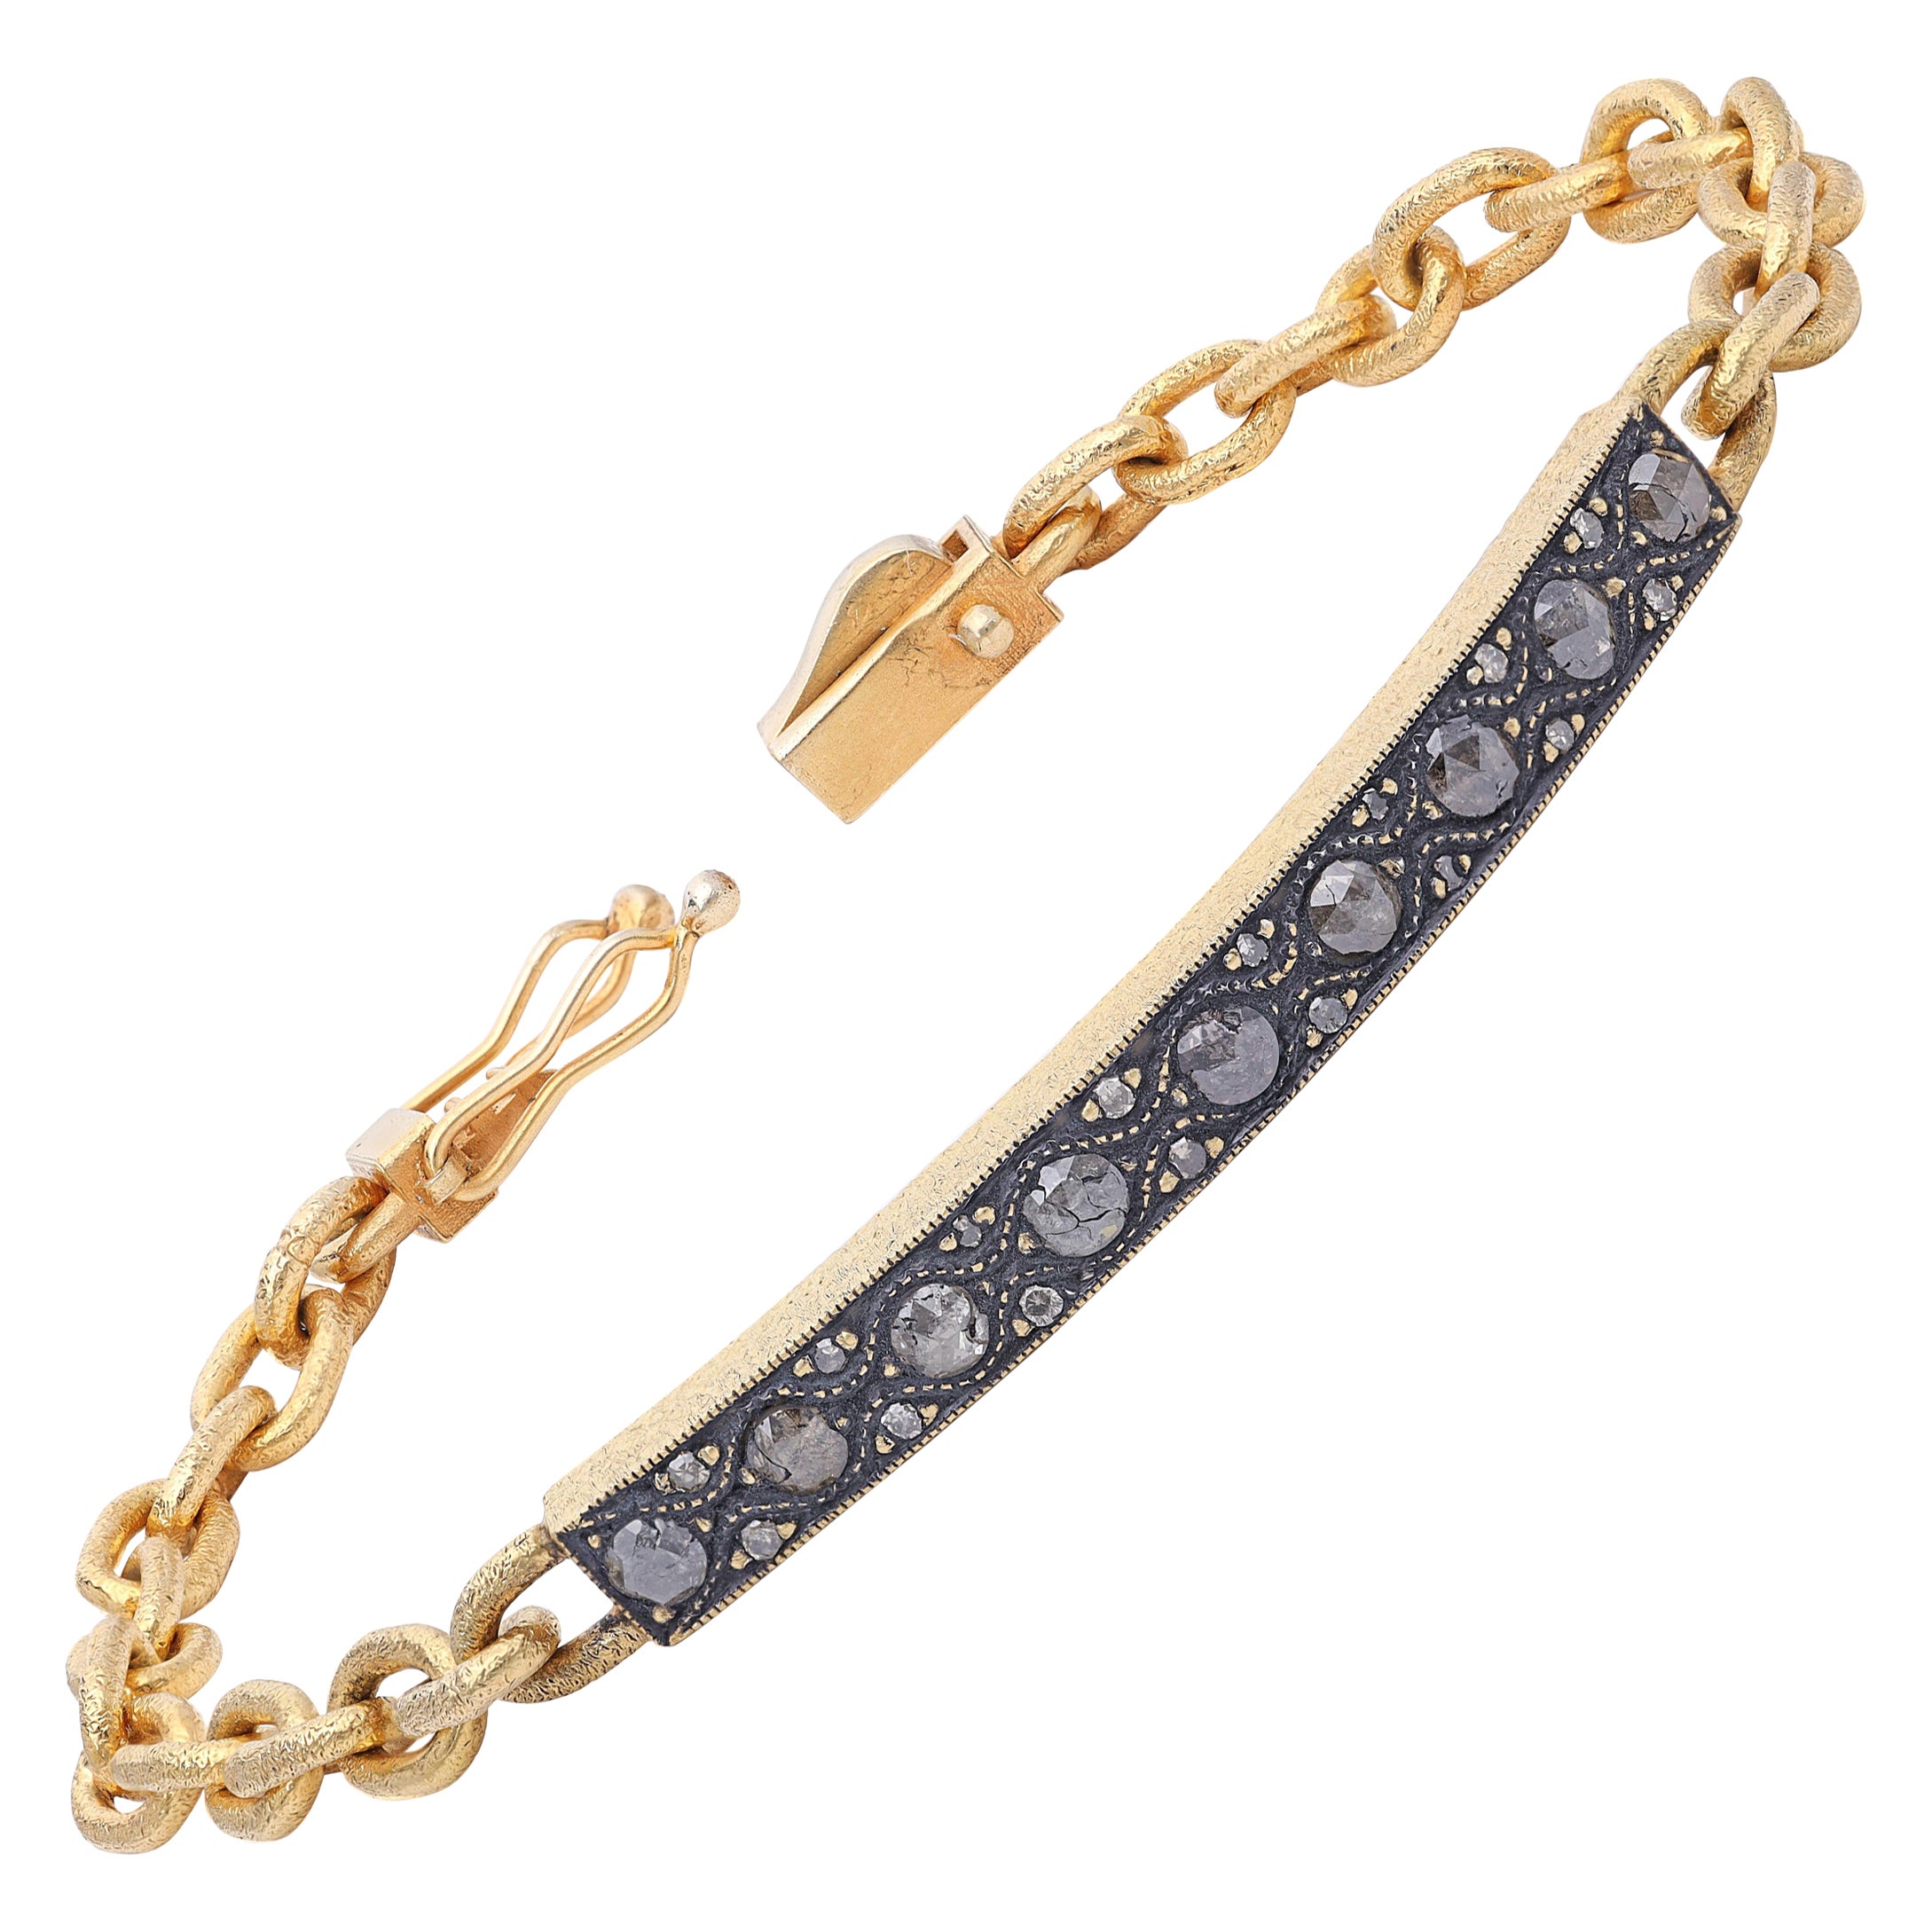 Bracelet for Women | American Diamond Bracelet Online by Niscka